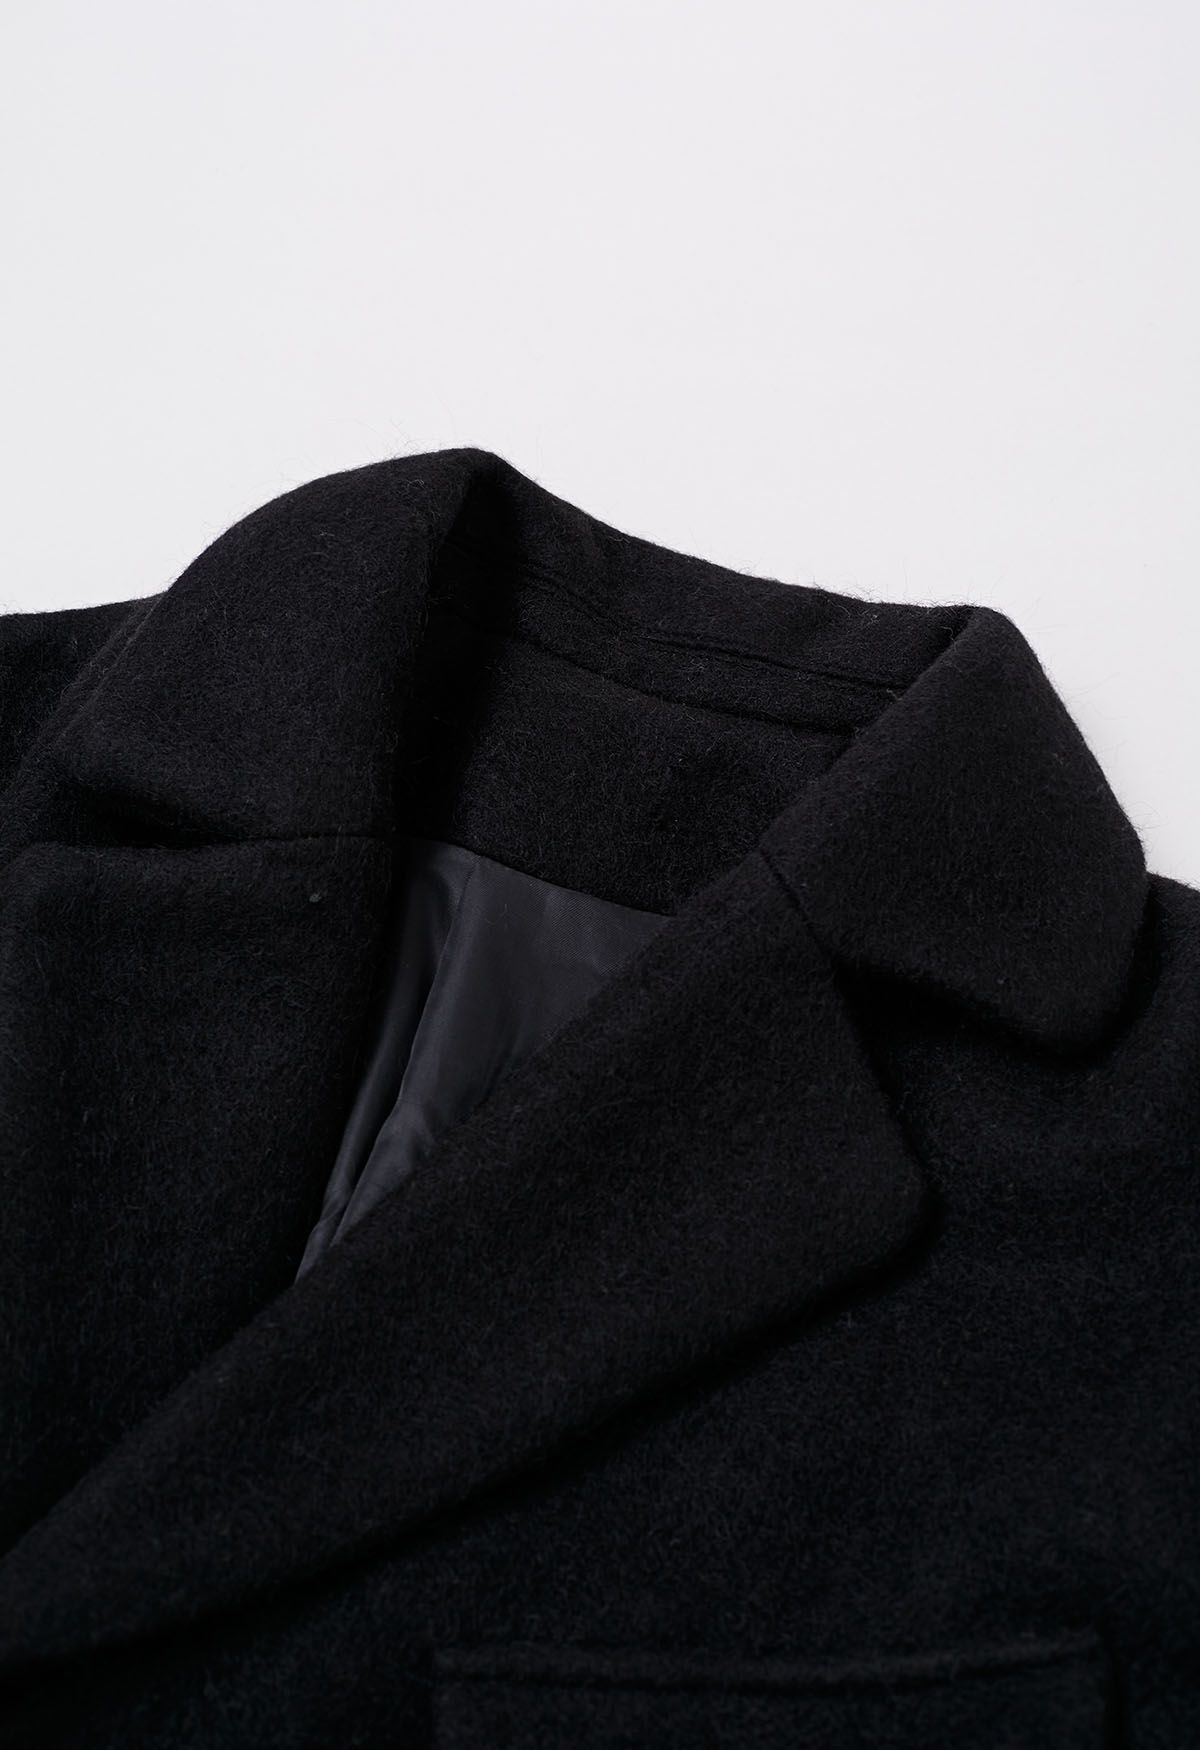 Zweireihiger, lang geschnittener Mantel mit geknöpfter Schulter und Gürtel in Schwarz